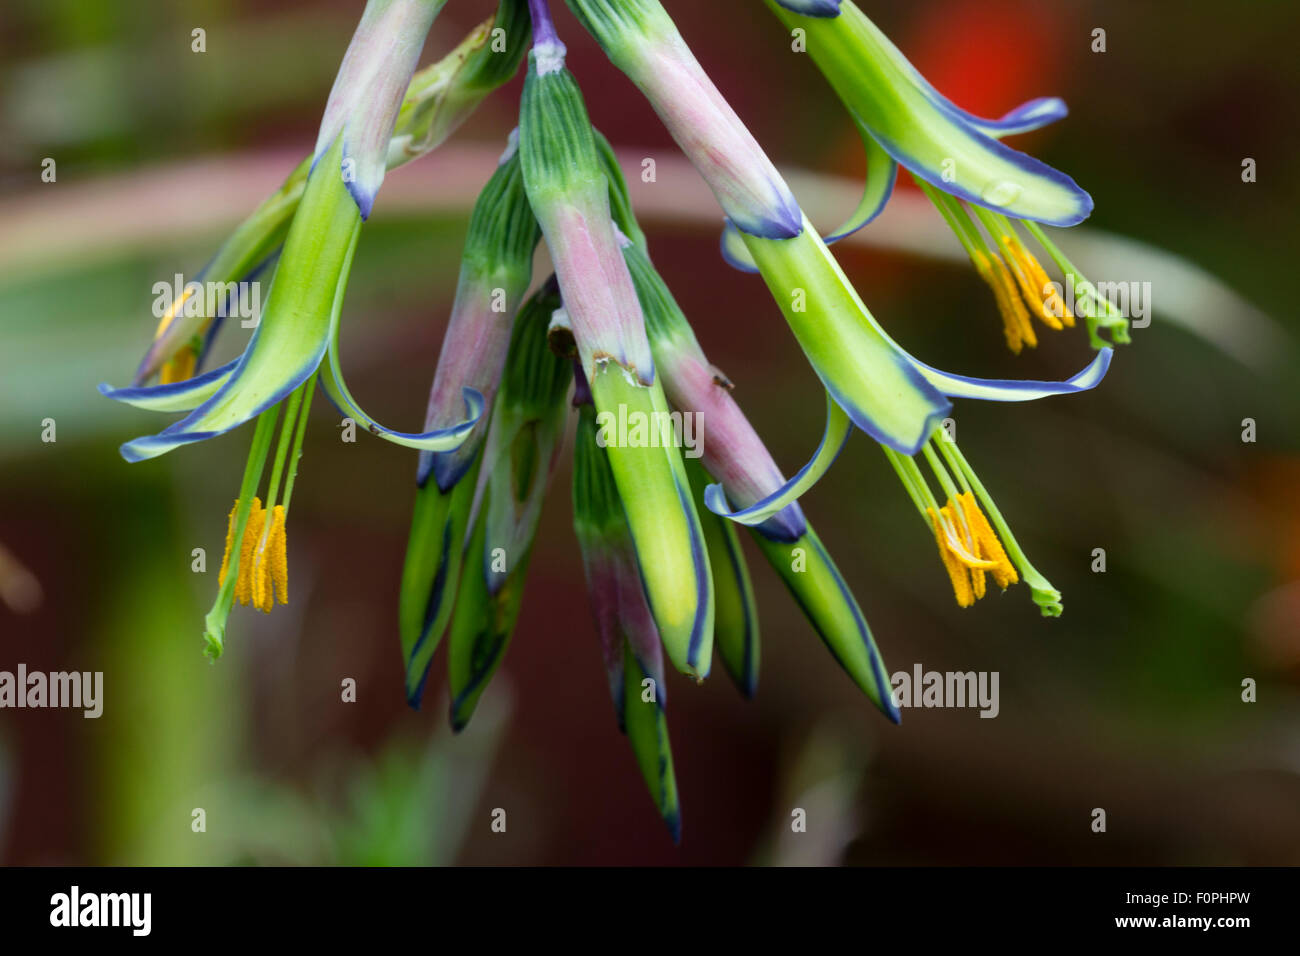 Flowers of the variegated terrestrial bromeliad, Billbergia nutans 'Variegata' Stock Photo